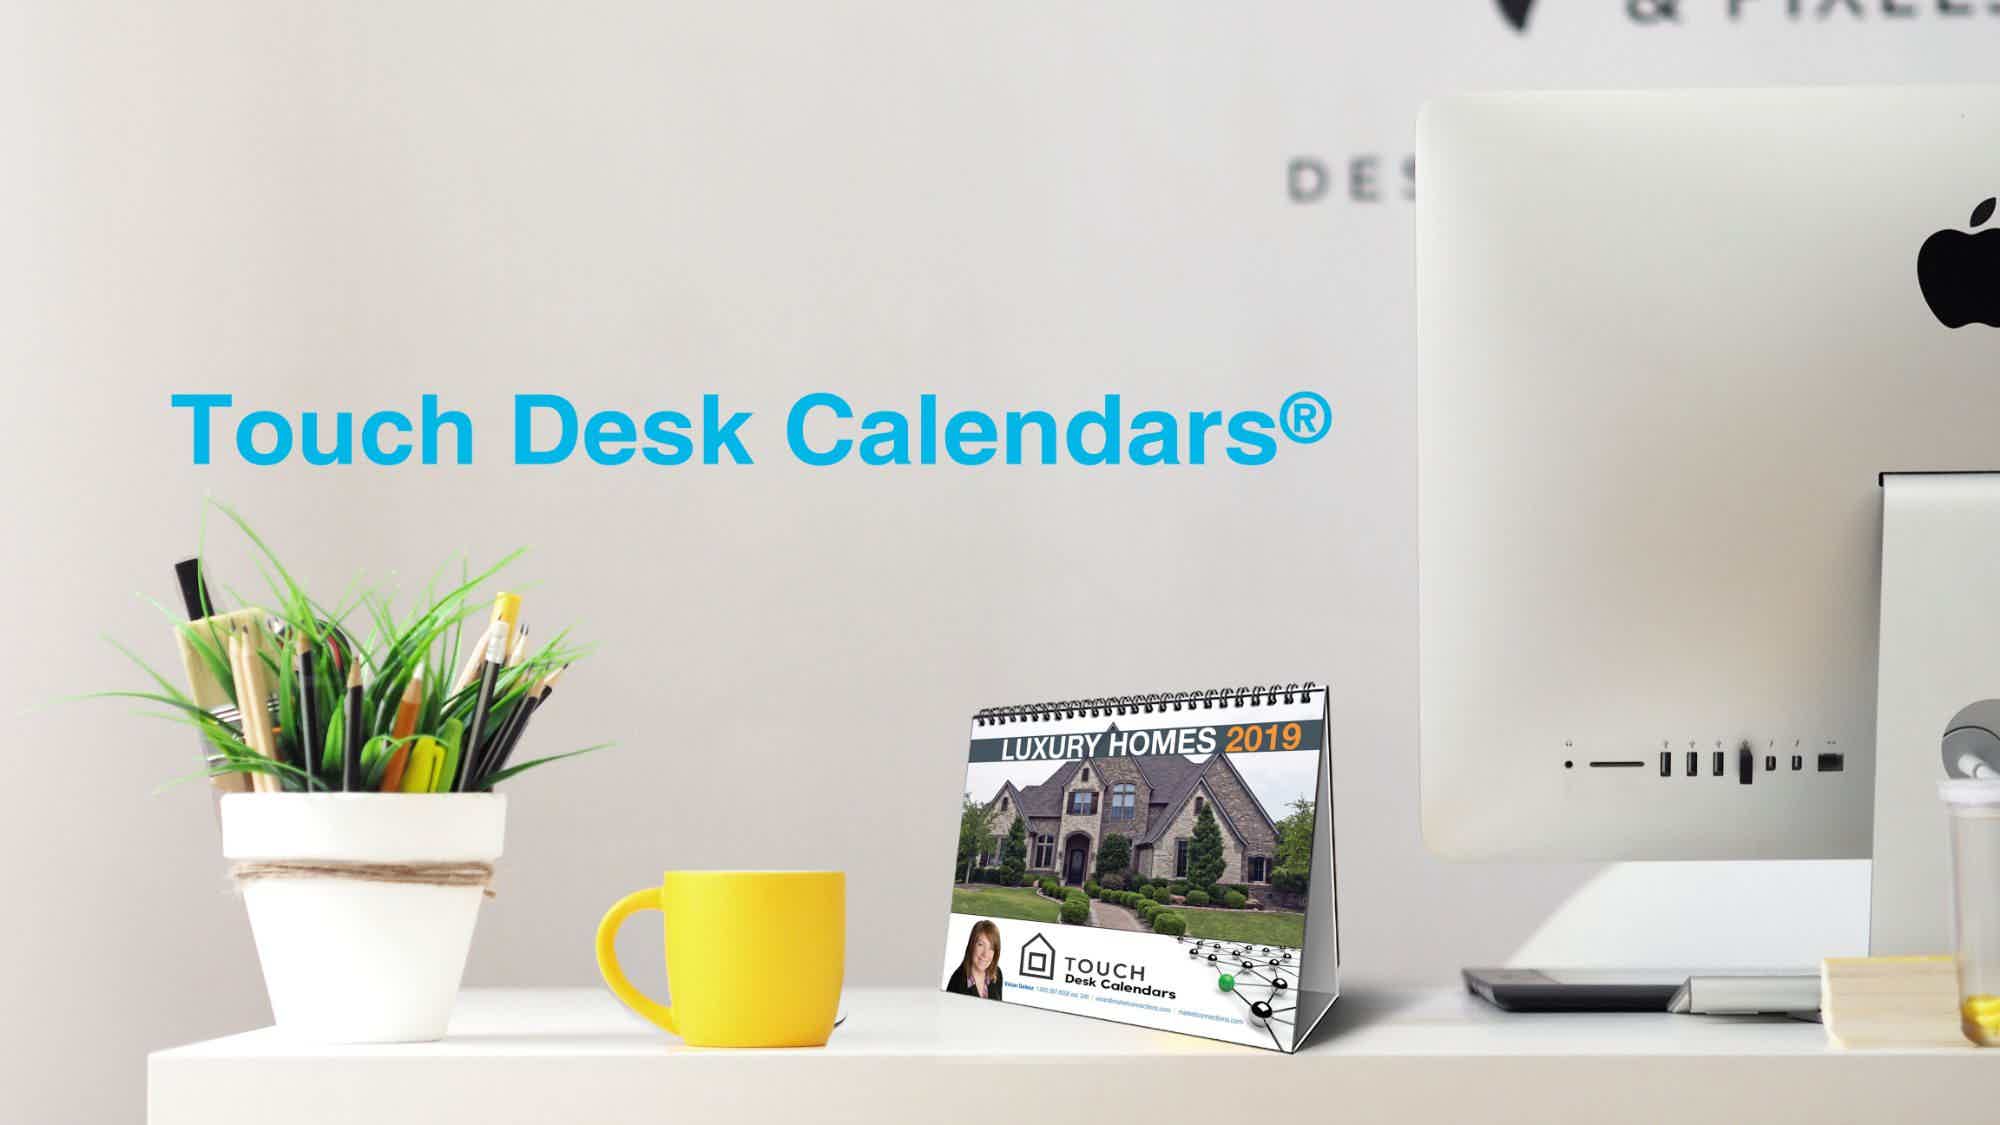 Touch Desk Calendars